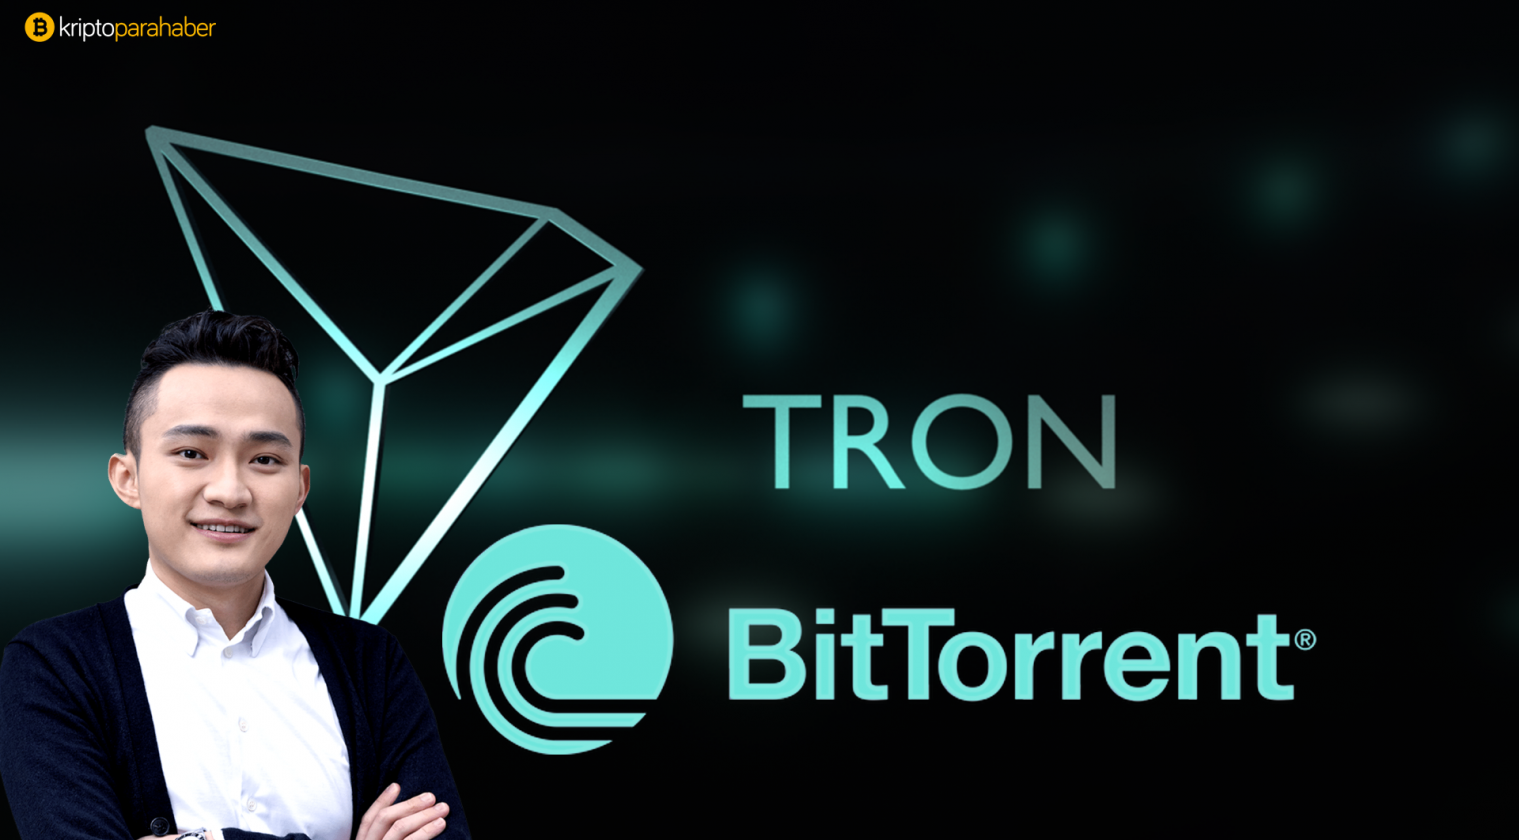 BitTorrent'in Tron'a devrediliği resmi olarak doğrulandı!